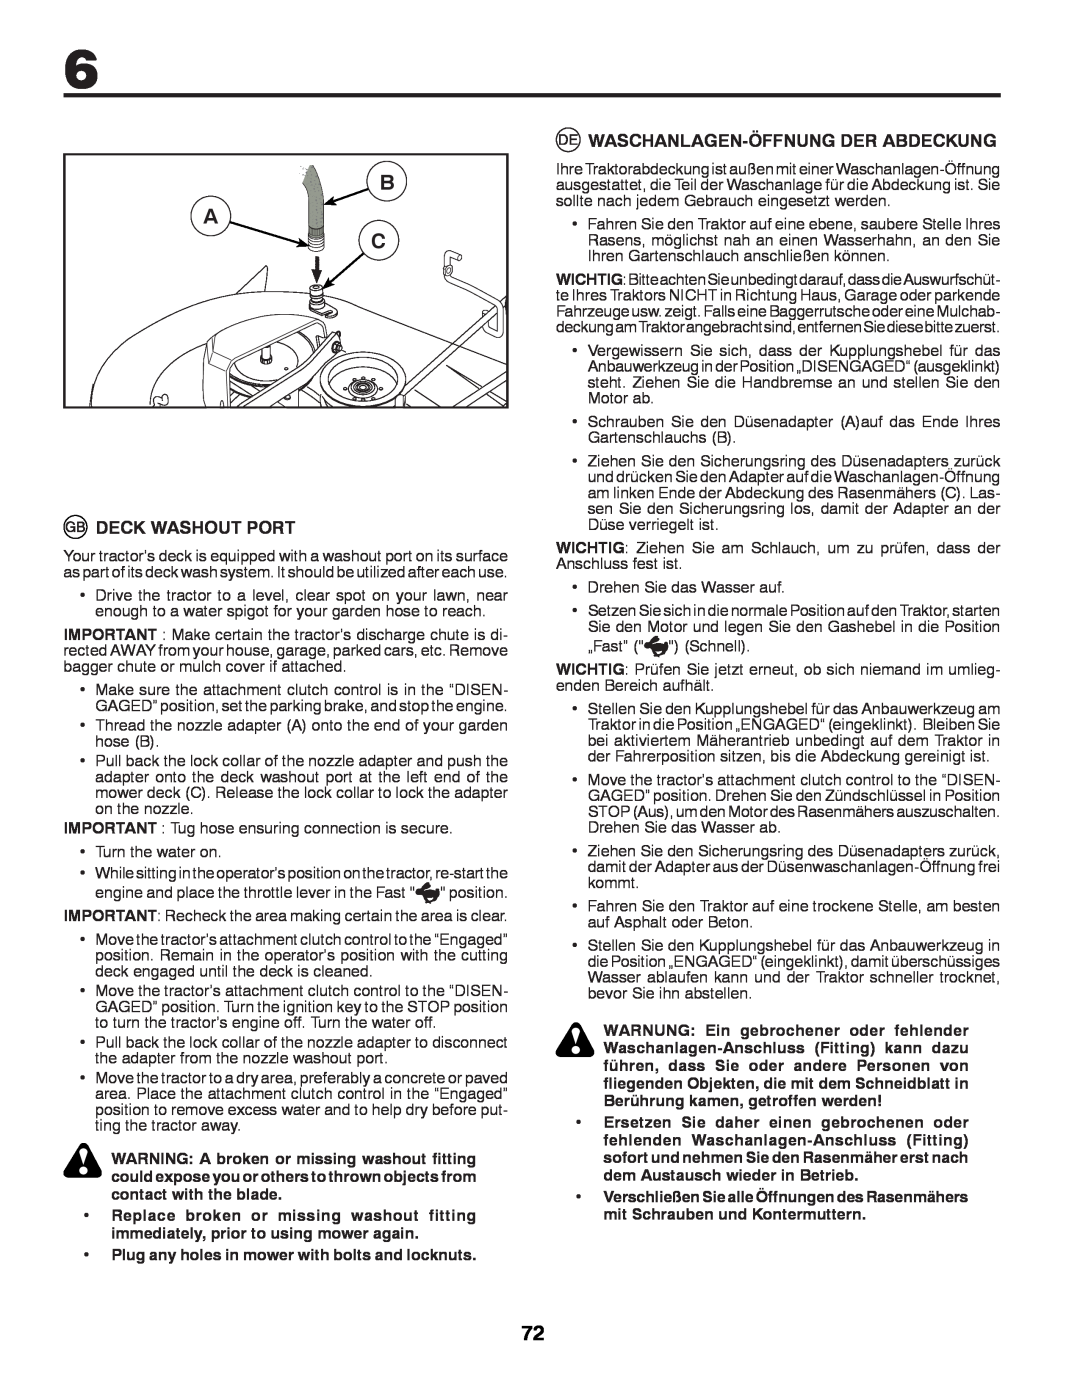 McCulloch 532 43 37-12 Rev. 1 instruction manual B A C, Deck Washout Port, Waschanlagen-Öffnungder Abdeckung 